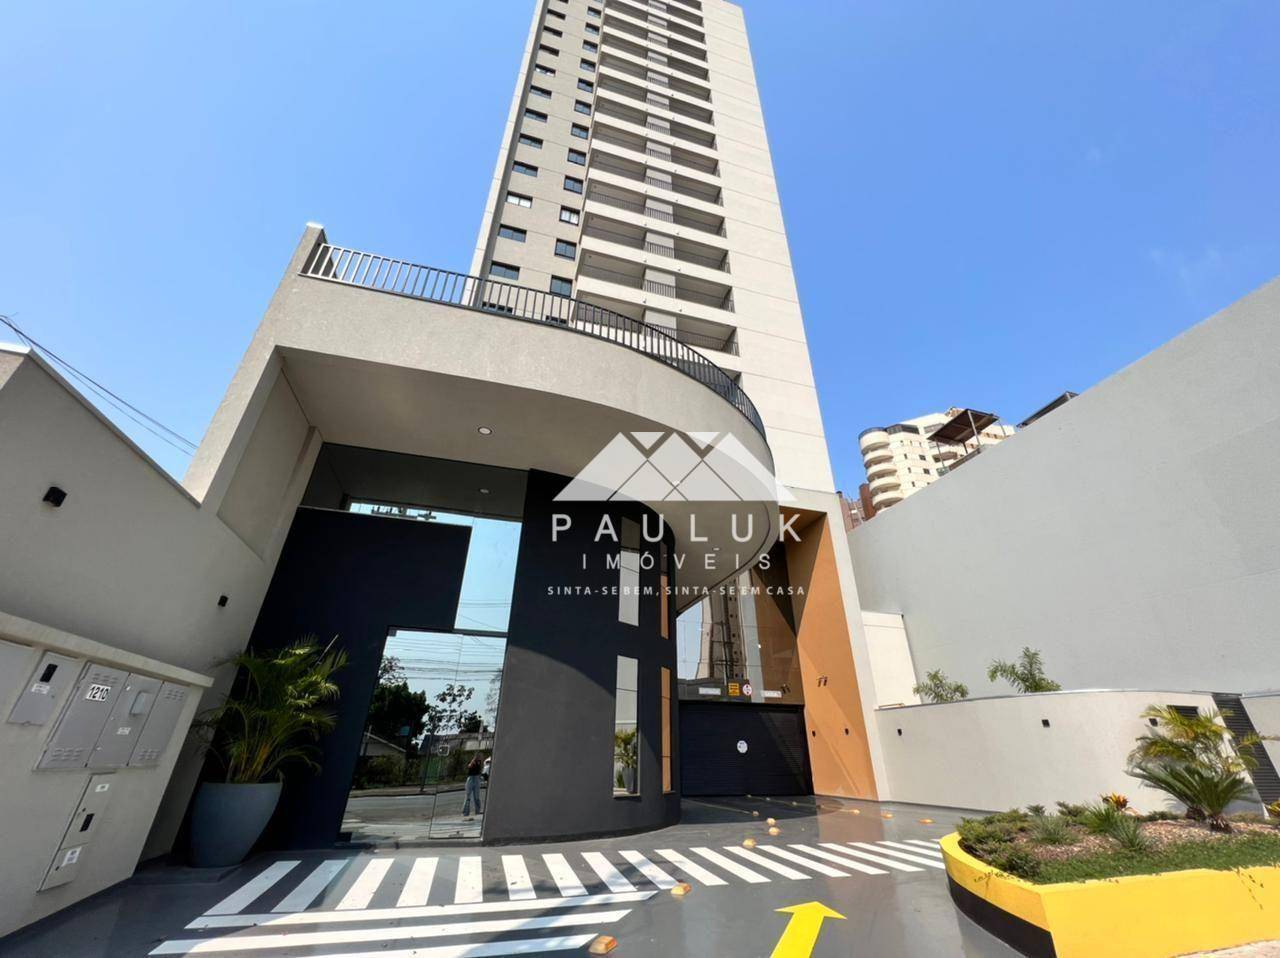 Apartamento com 2 Dormitórios Sendo 1 Suíte à venda Por R$ 600.000 - Edifício Residencial Miró - Foz | PAULUK IMÓVEIS | Portal OBusca